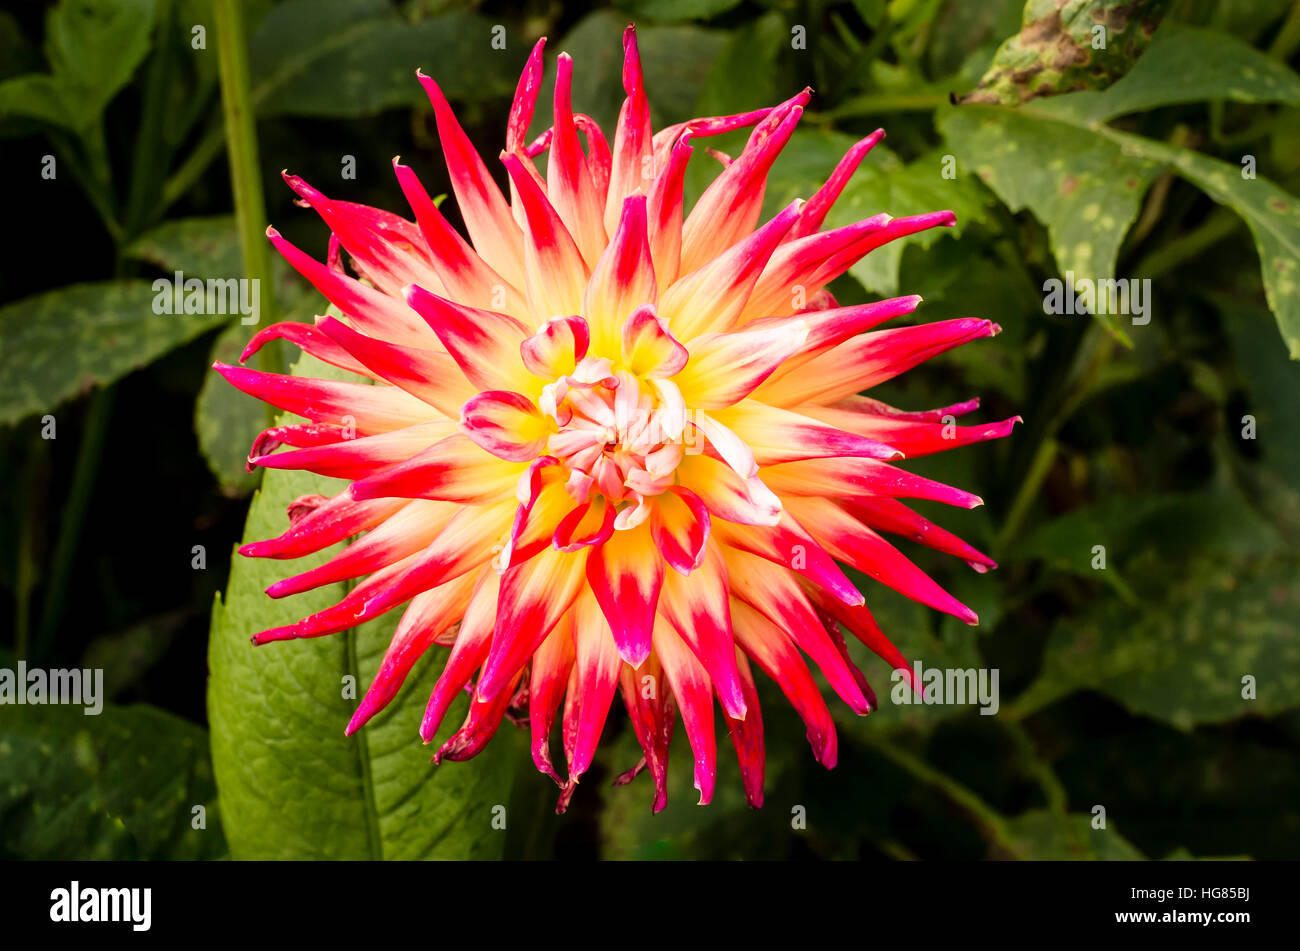 Dahlia Bora Bora flowering in September in th UK Stock Photo